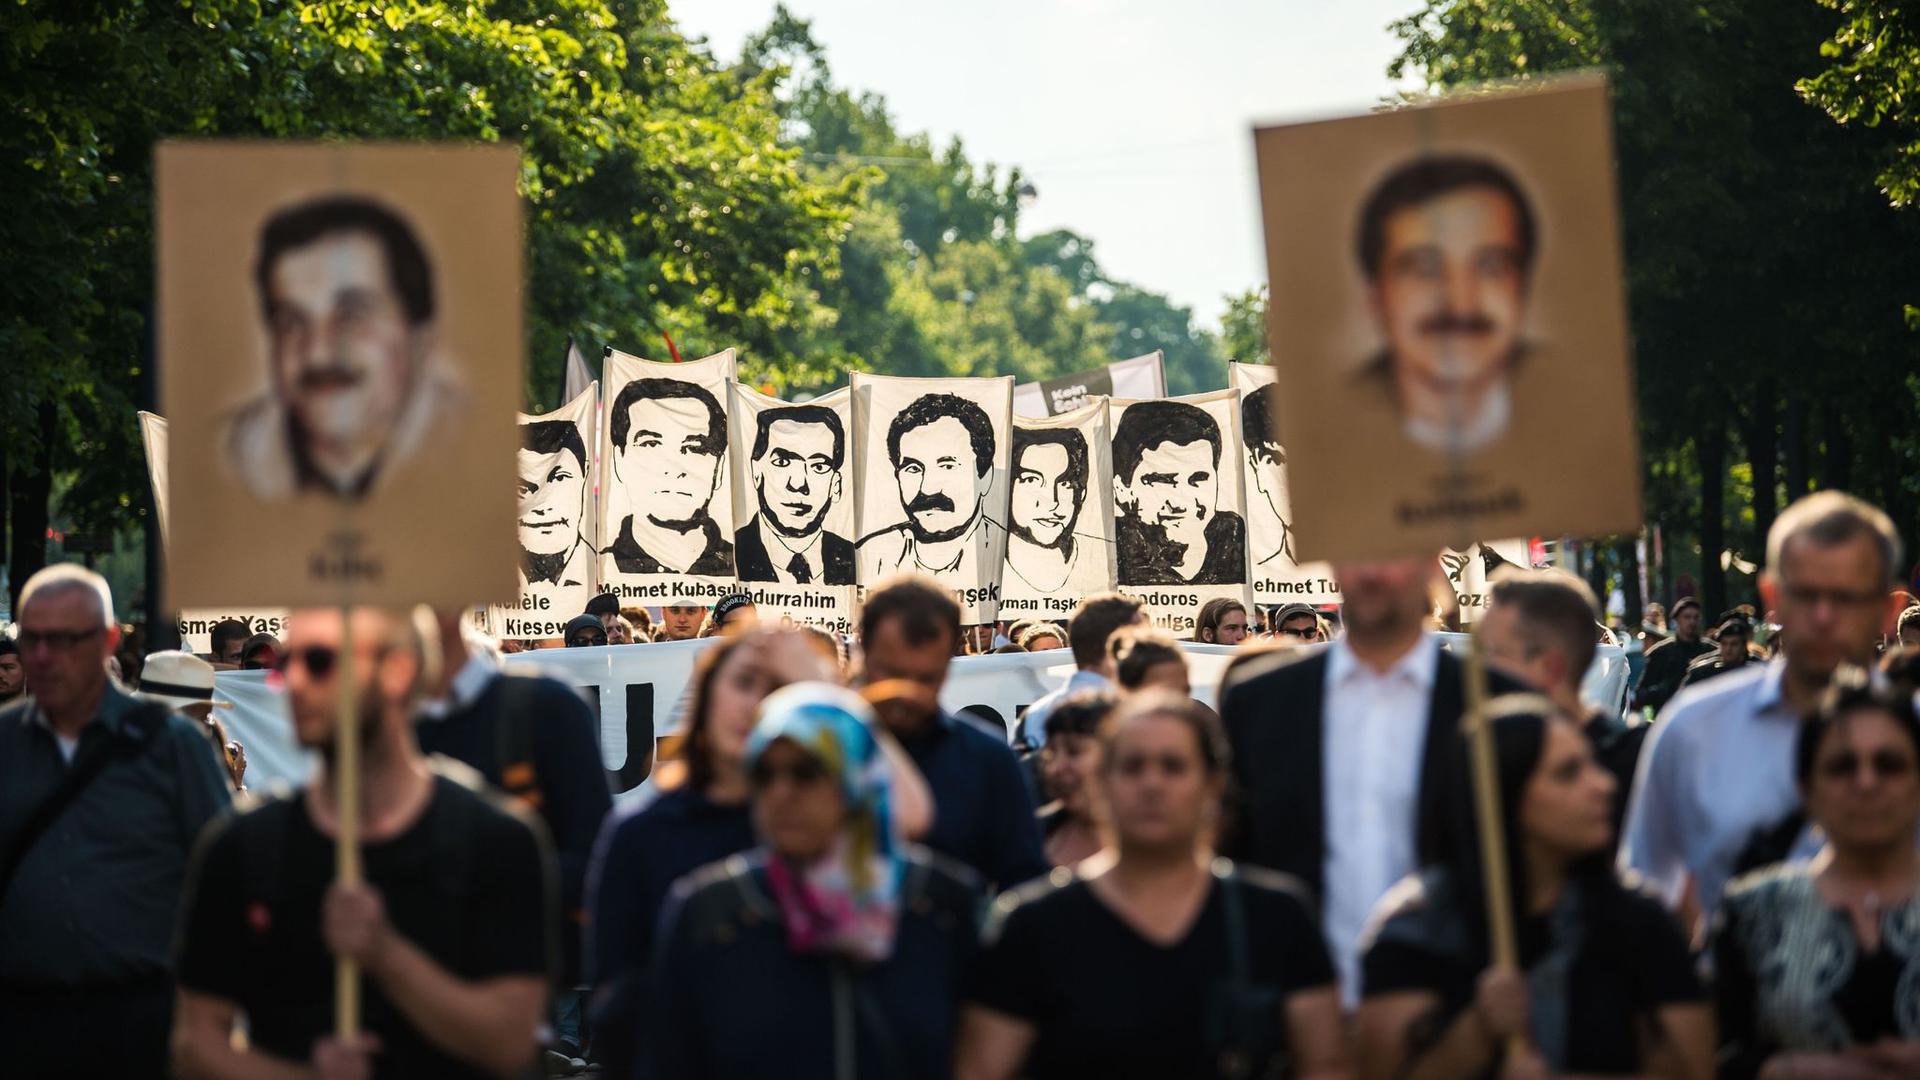 Demonstranten während einer Kundgebung mit Porträt-Abbildungen der NSU-Opfer im August 2018 in München.